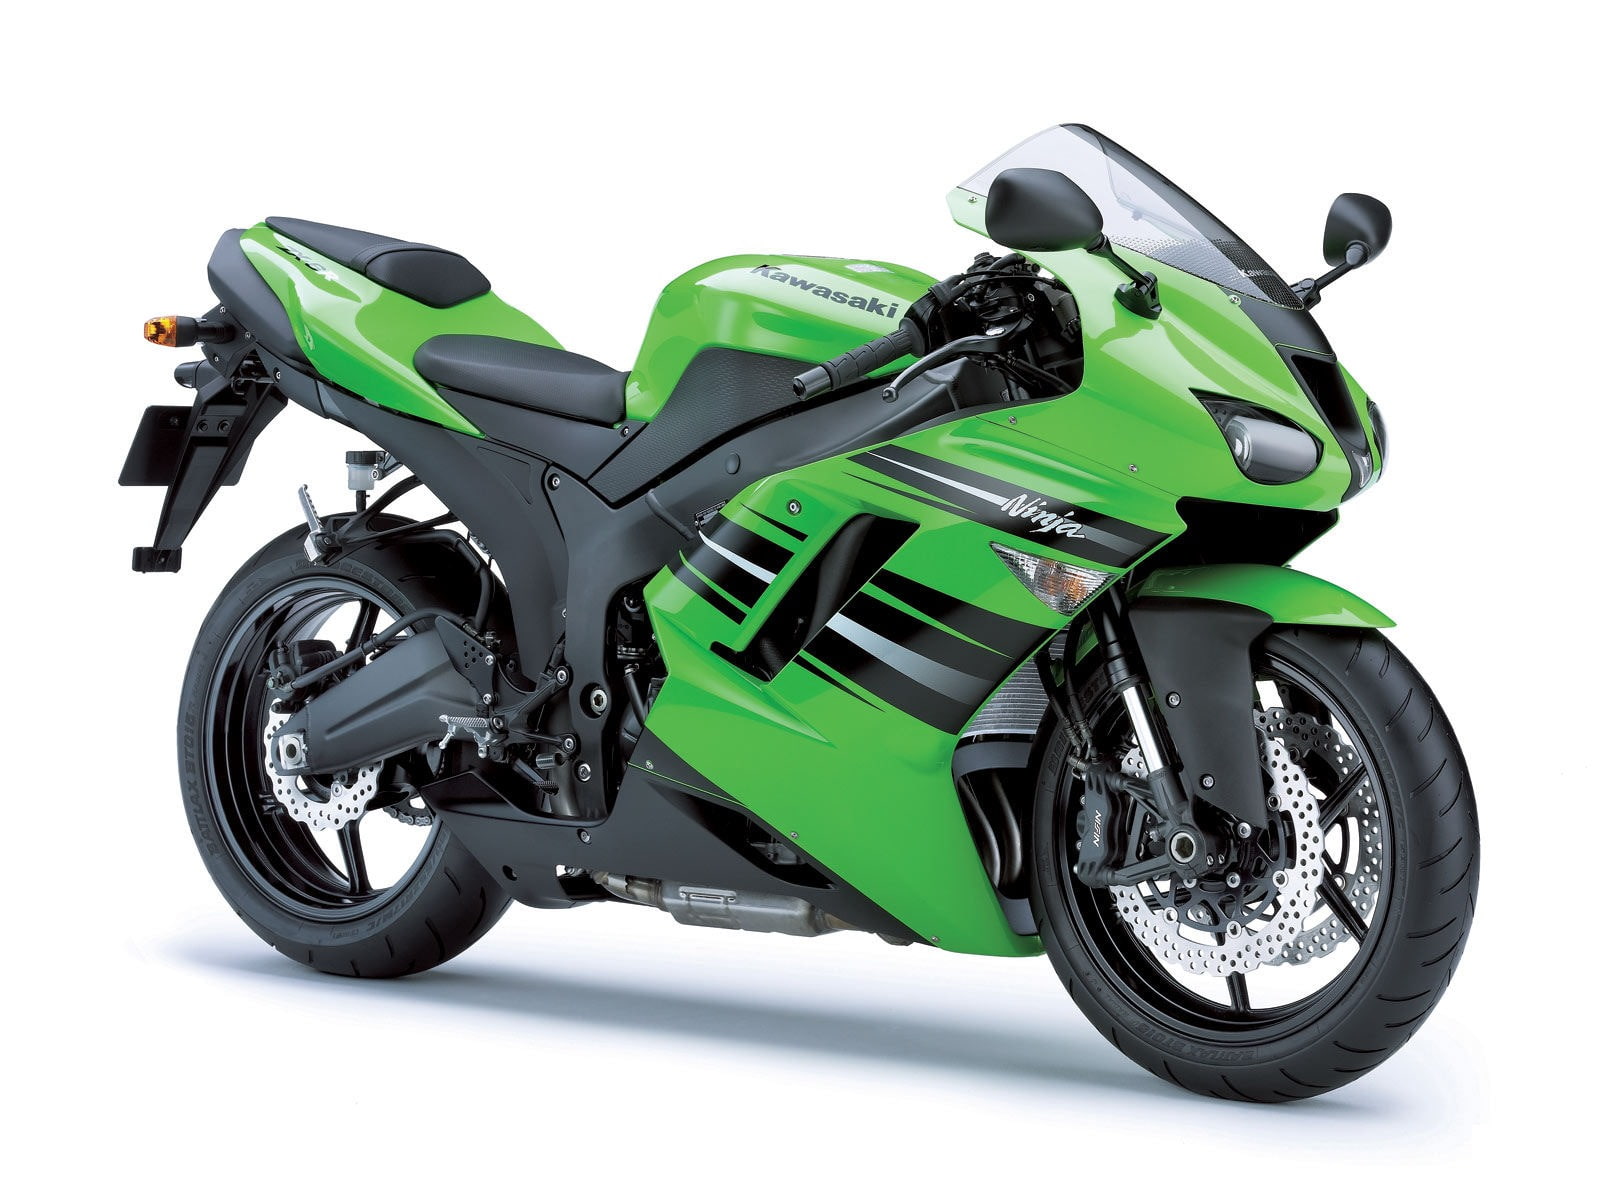 Kawasaki Ninja ZX 6R Blue Green HD, bikes, motorcycles, bikes and motorcycles